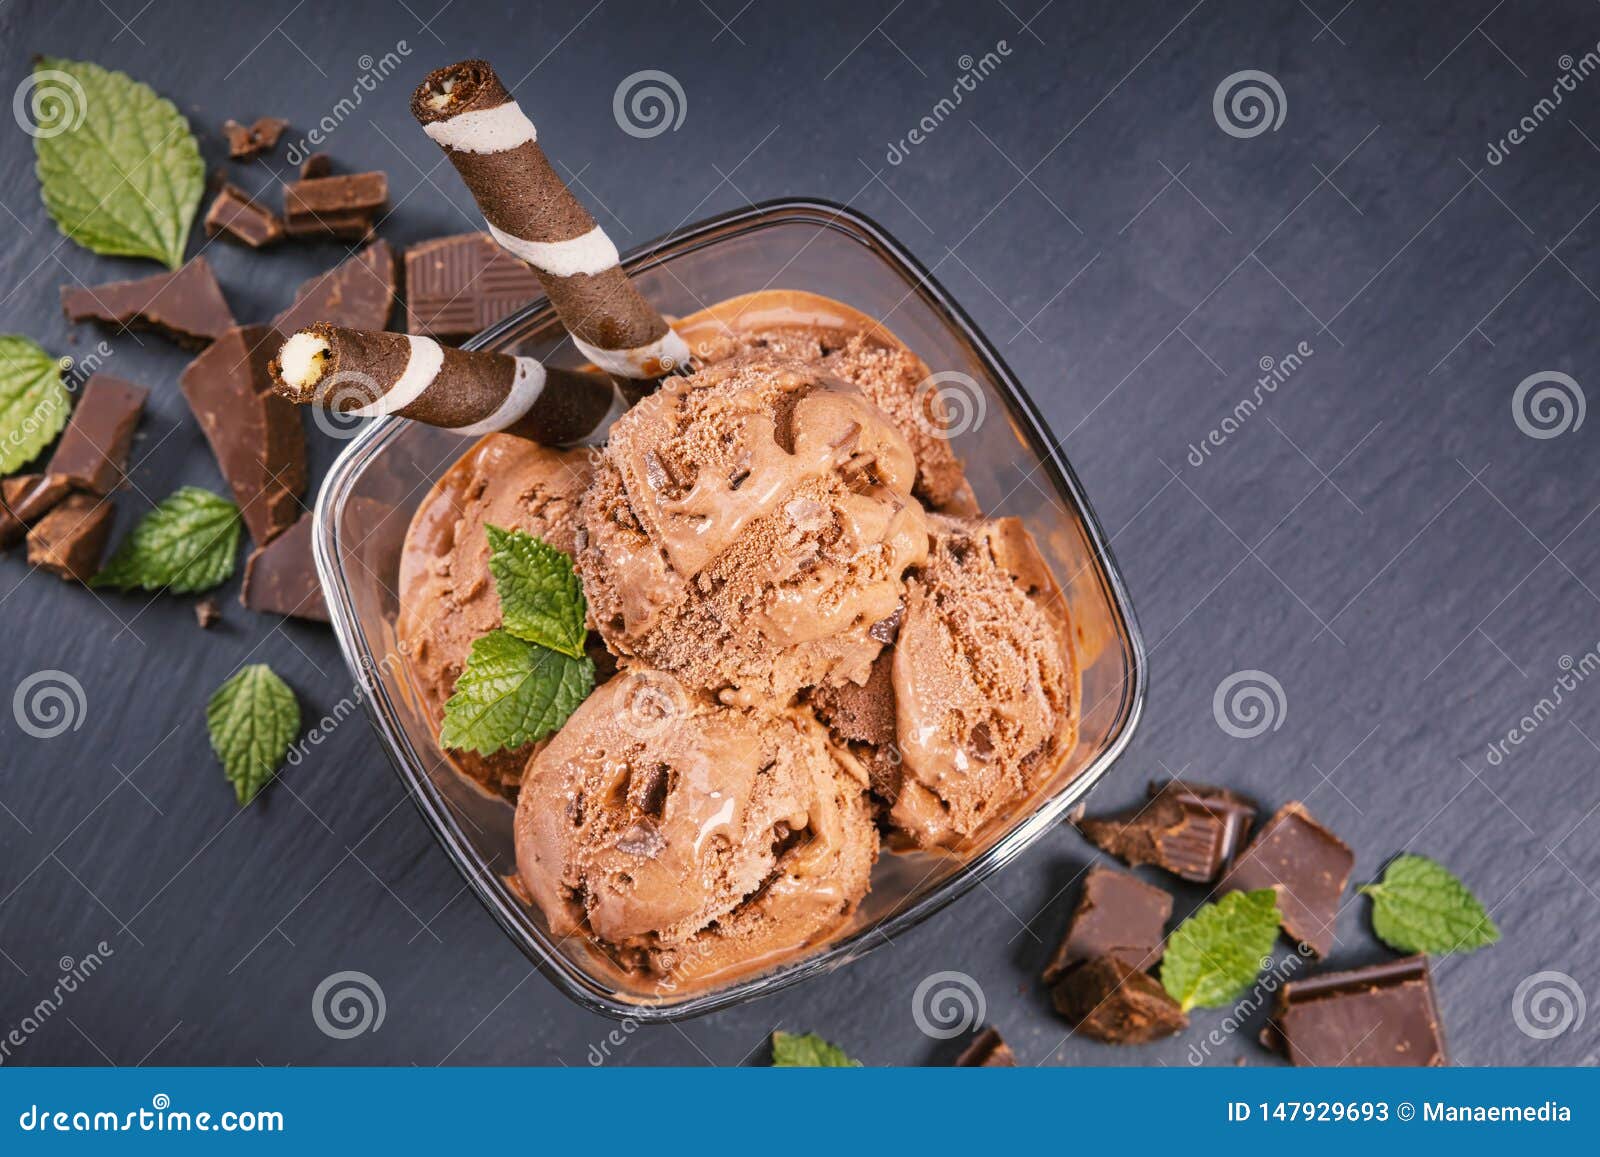 Шнуров шоколадка. Шарик шоколадного мороженого. Шоколадное мороженое в стеклянной чашке. Коричневое мороженое. Мороженое шоколадное деревянной посуде.